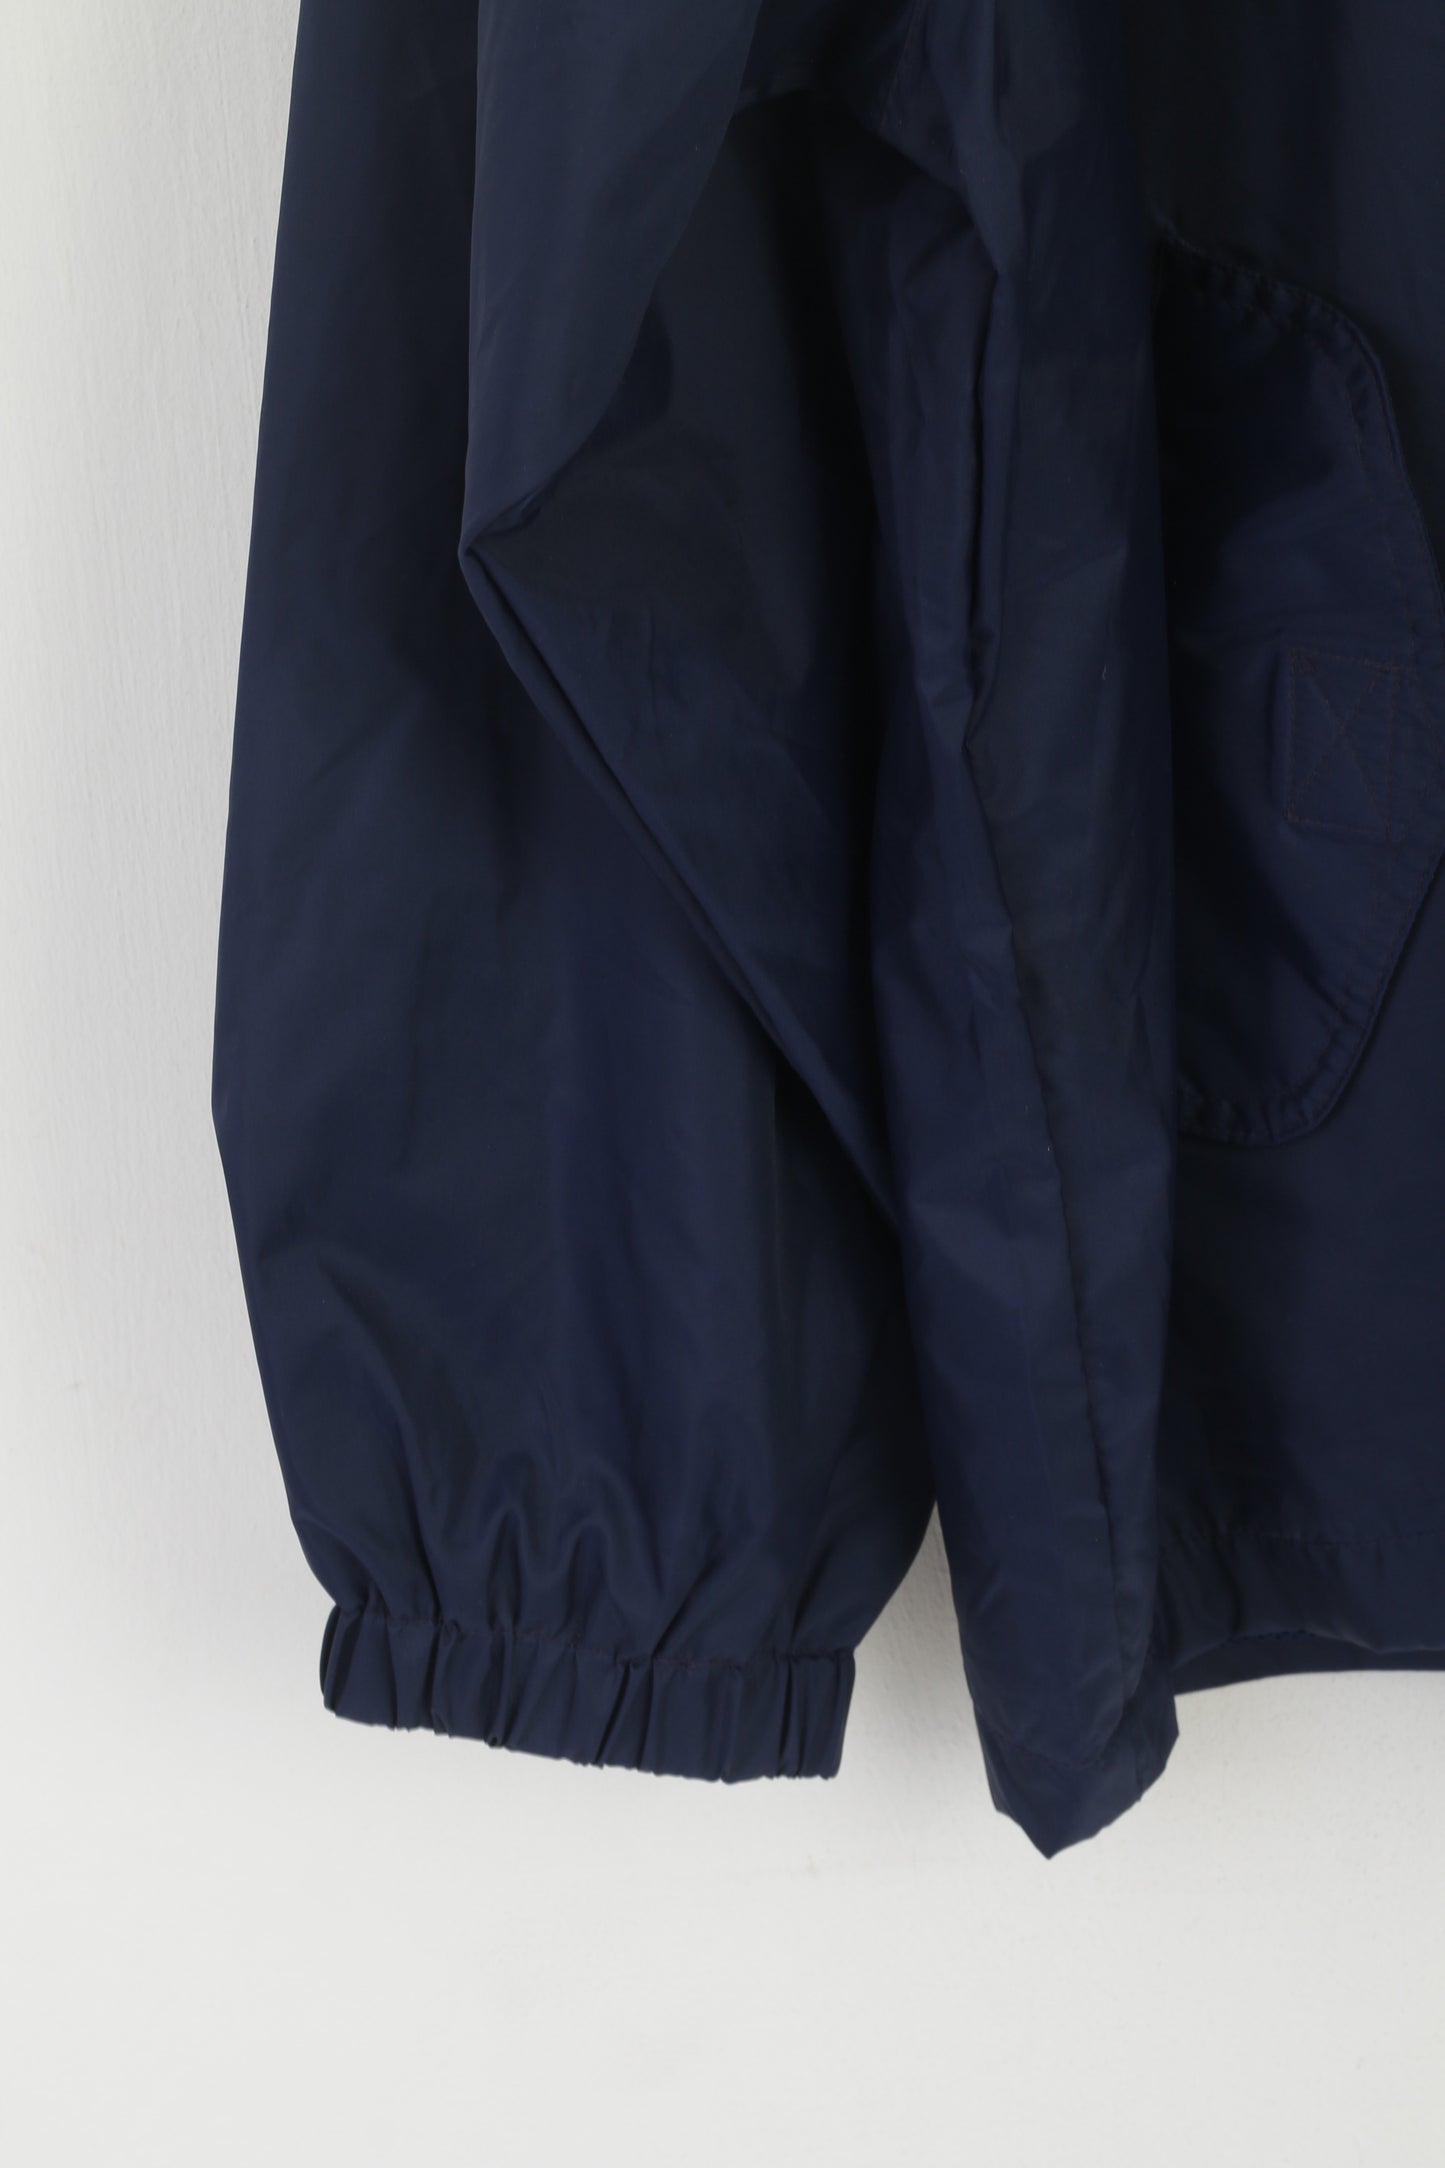 Giacca pullover John F.Gee da uomo 60/62 XXXL Top leggero con cappuccio in nylon vintage blu scuro